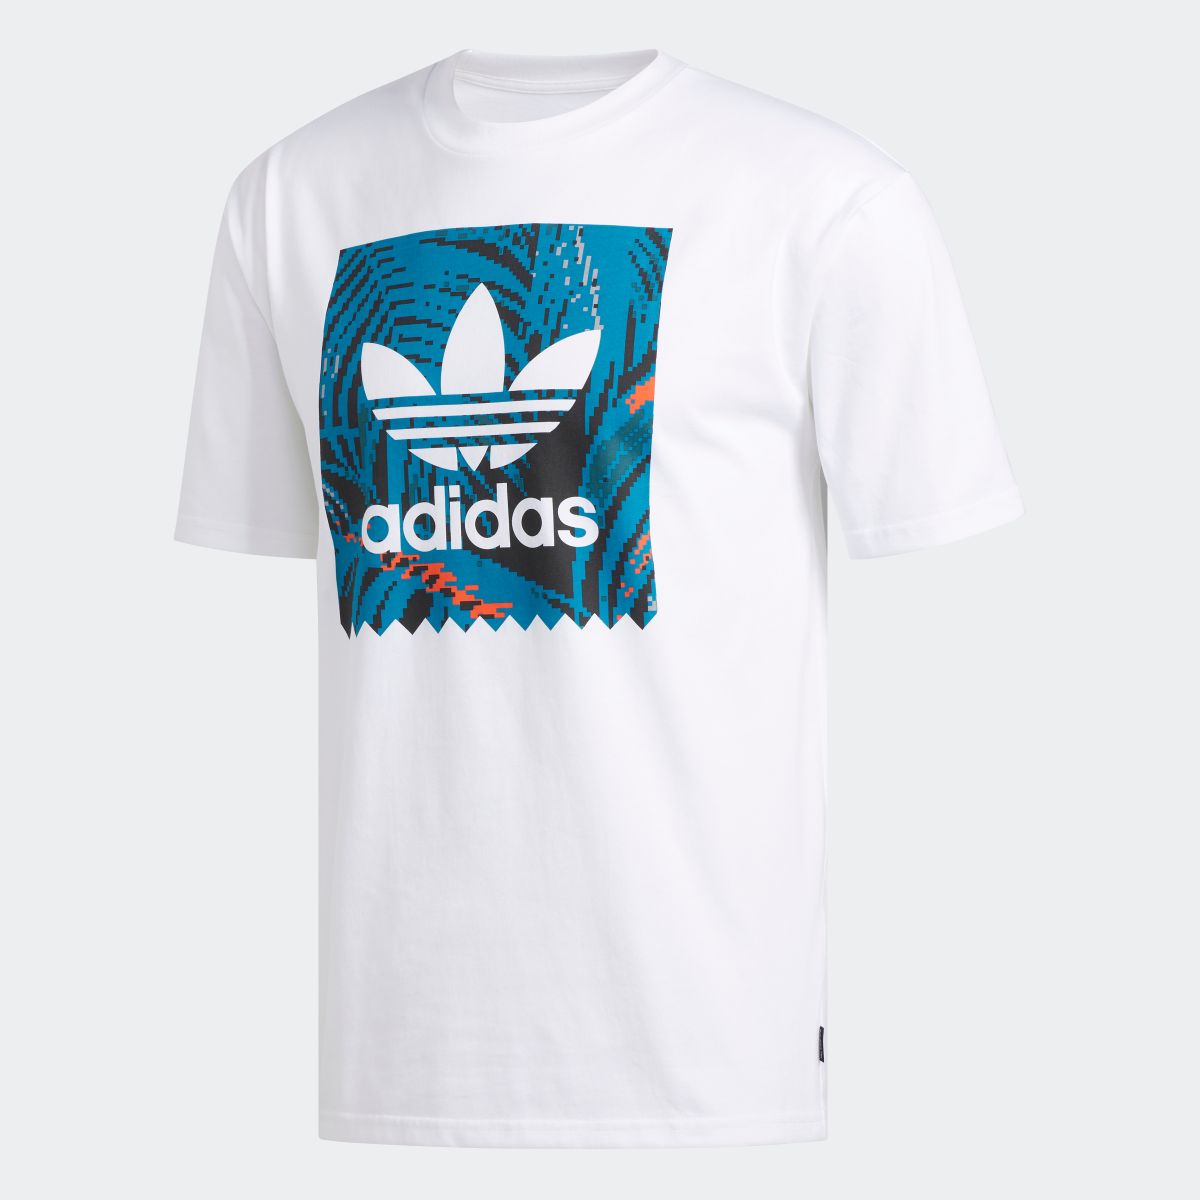 楽天市場 公式 アディダス Adidas スケートボーディング プリント 半袖tシャツ Print Tee オリジナルス メンズ ウェア トップス Tシャツ 白 ホワイト Ec7361 半袖 Adidas Online Shop 楽天市場店